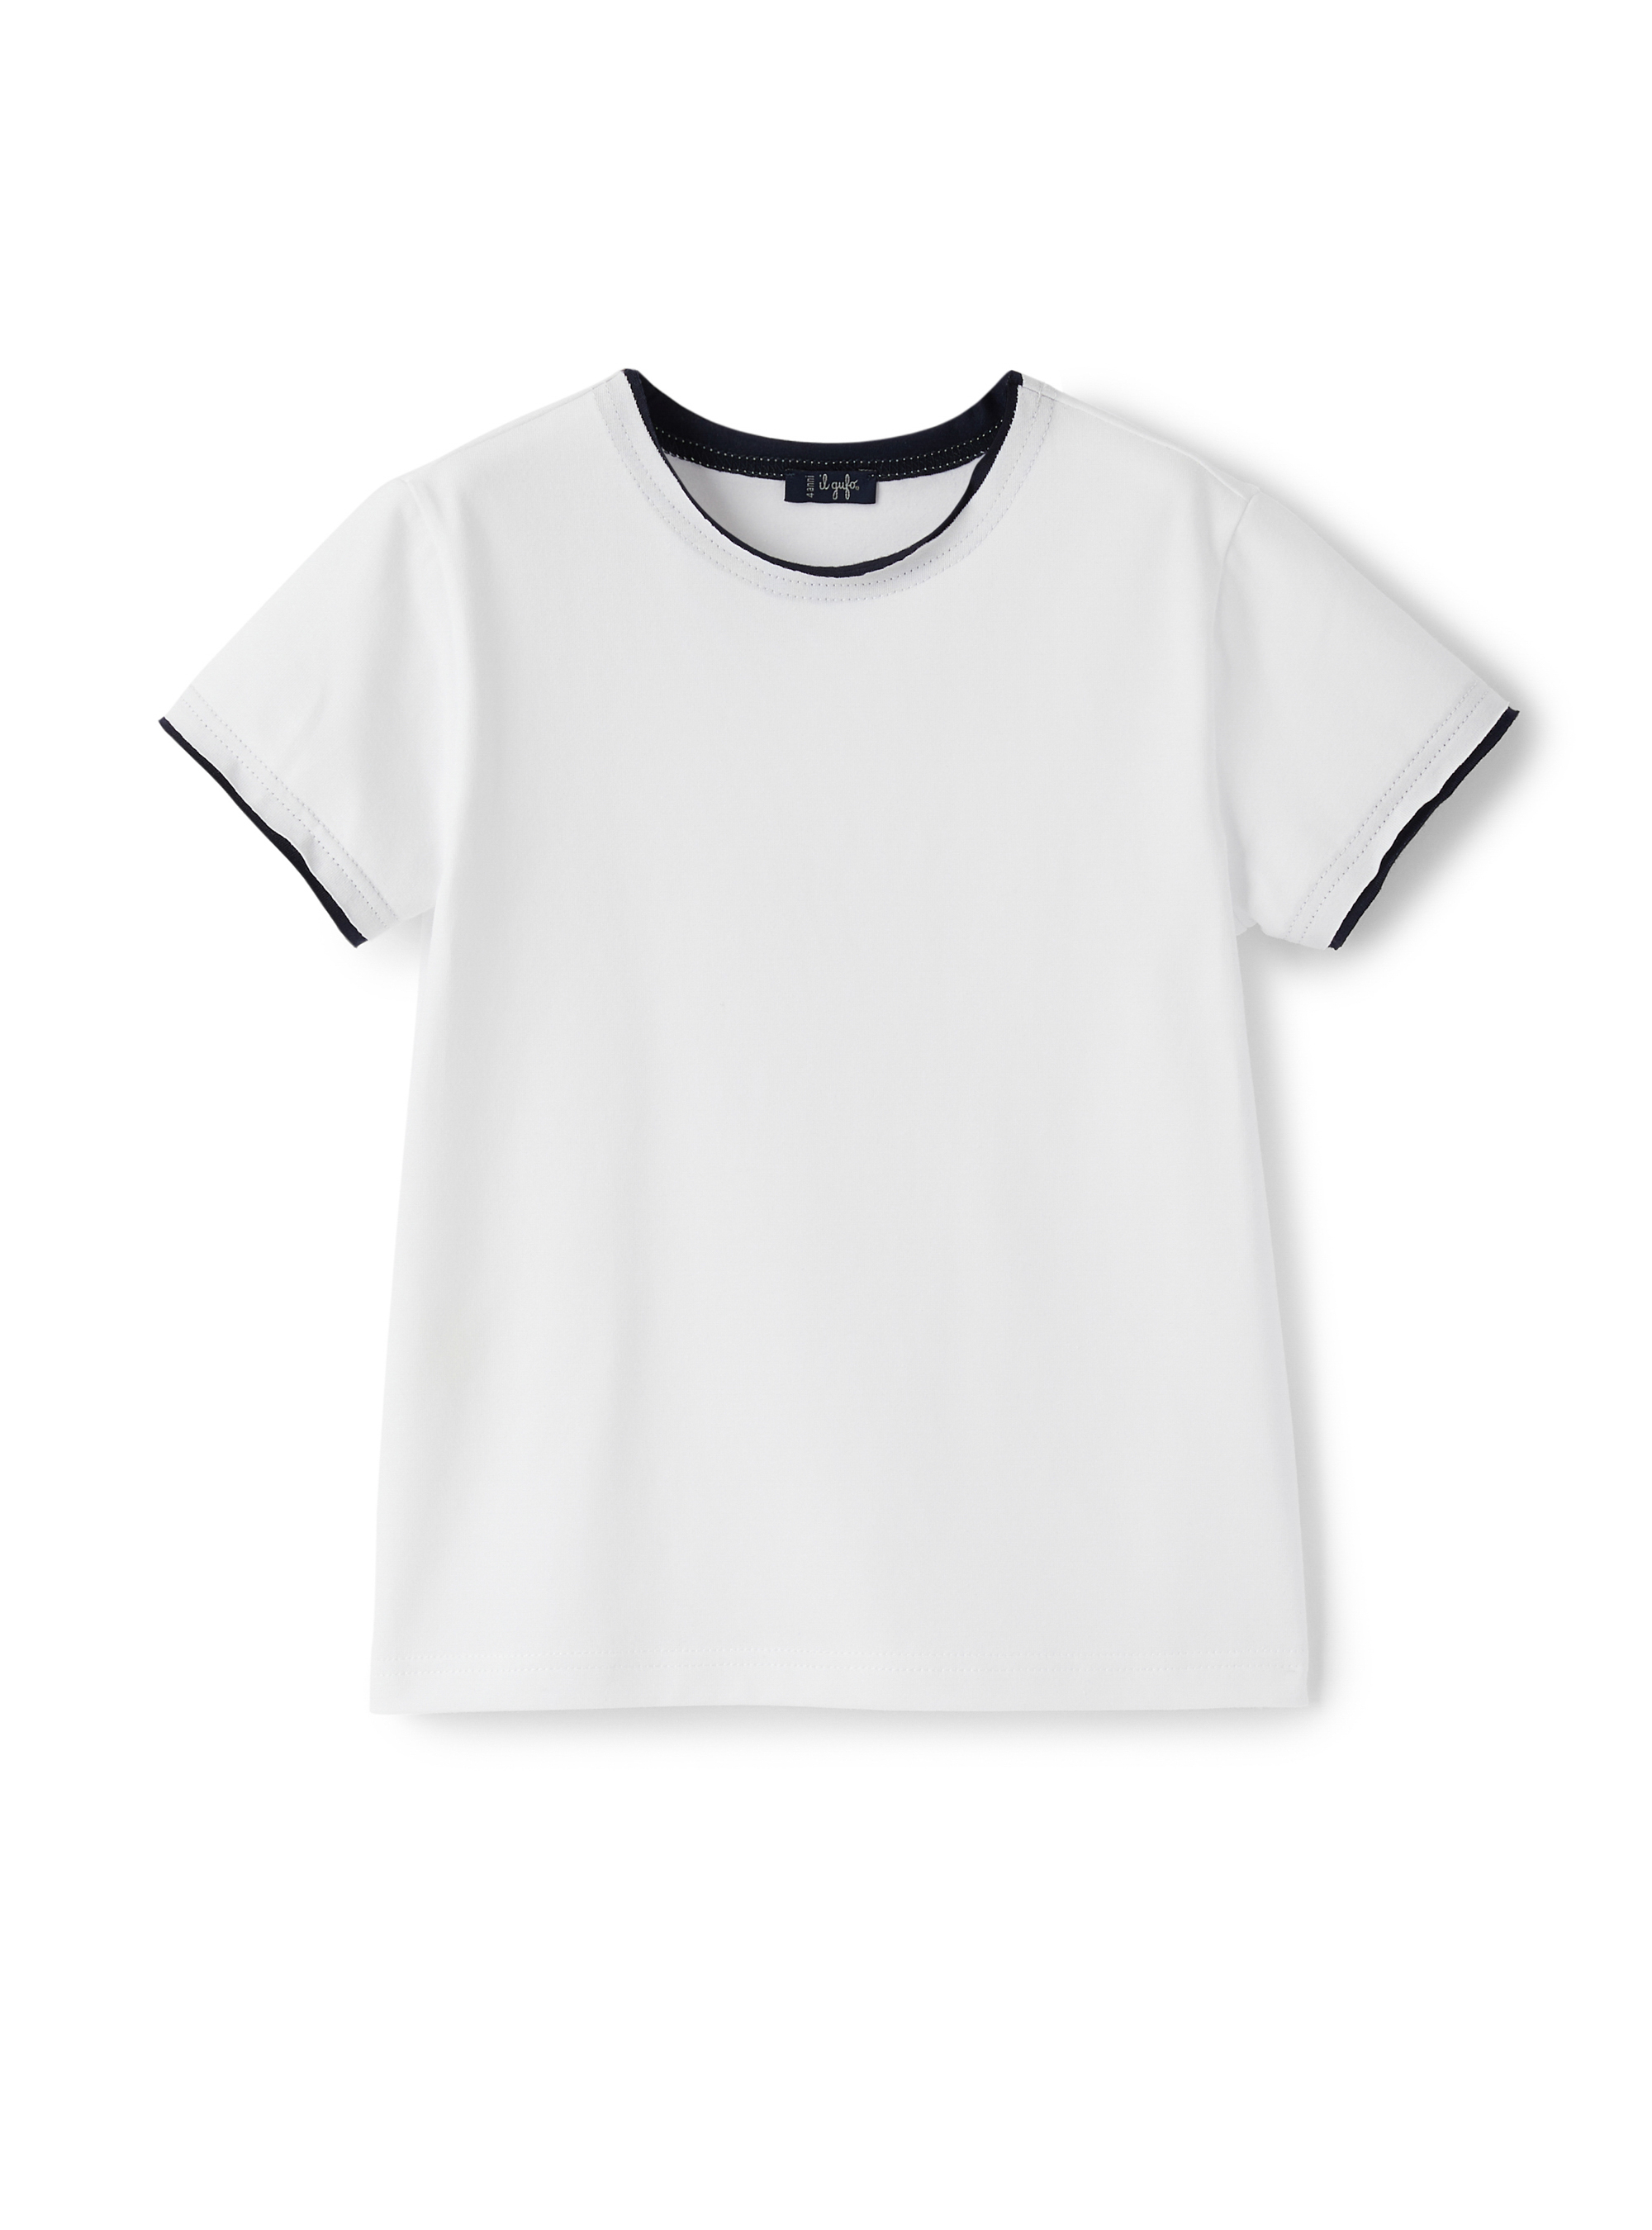 Weißes T-Shirt mit blauer Paspel - T-shirts - Il Gufo